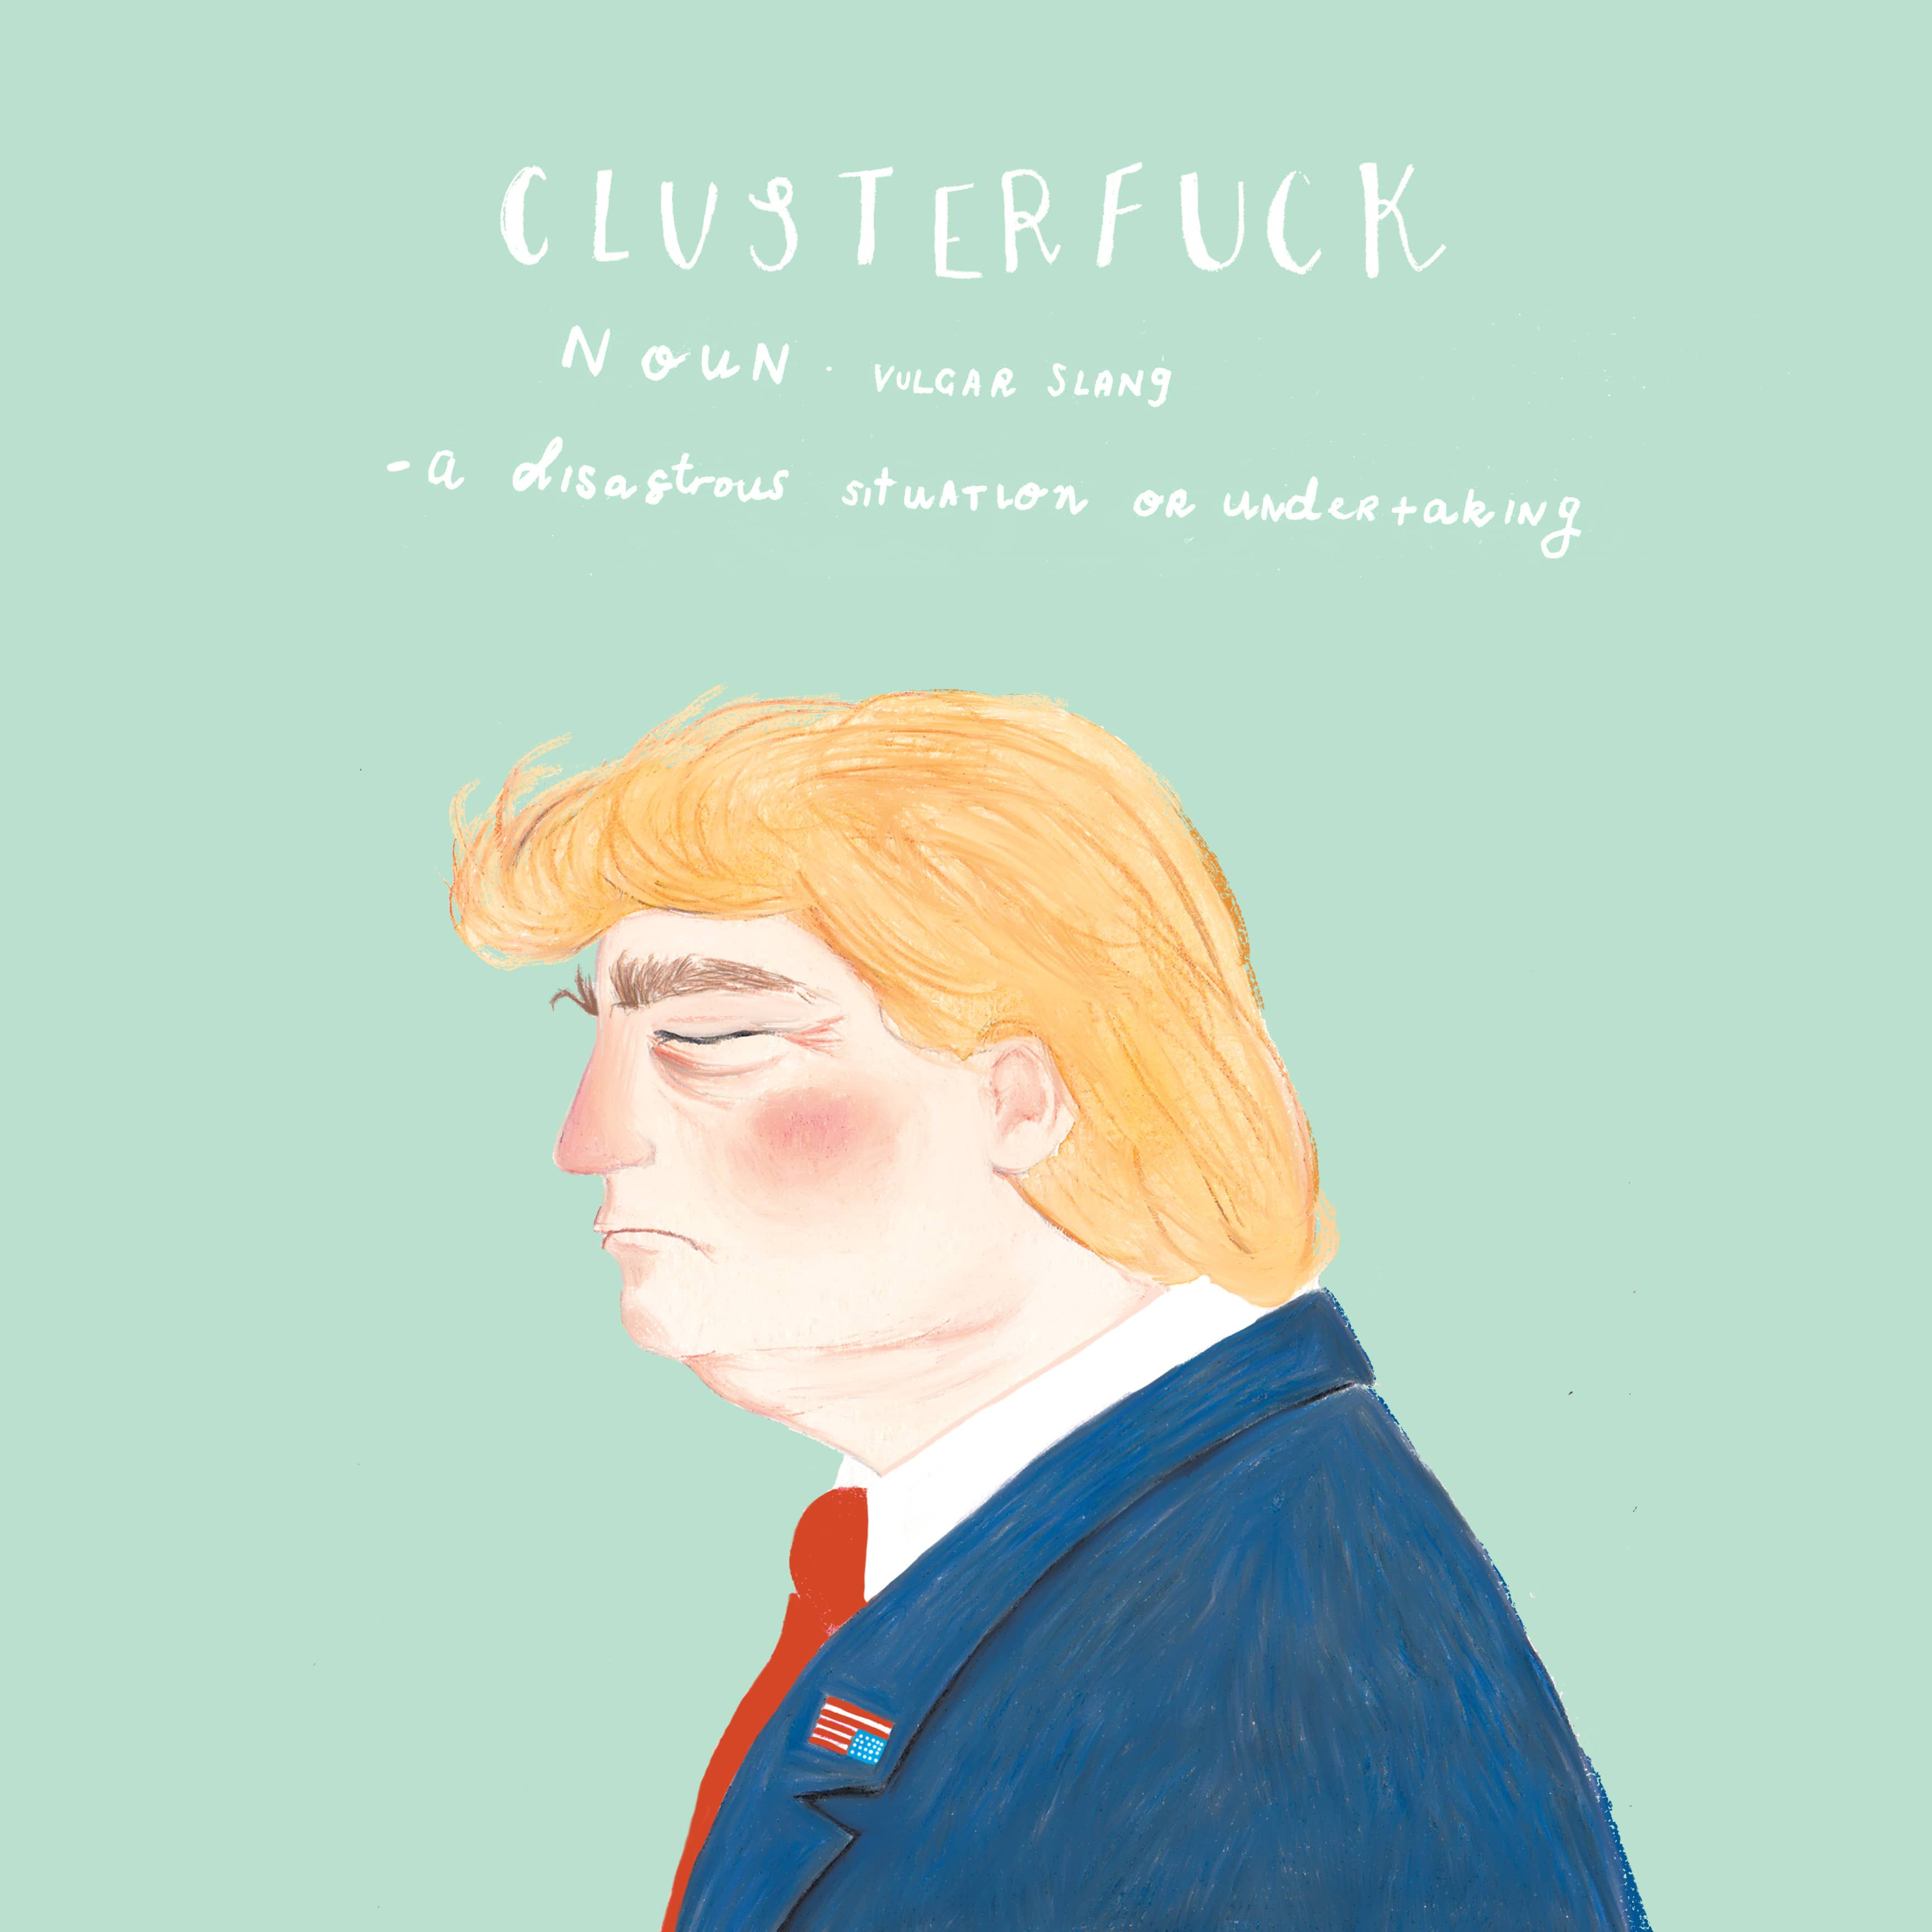 clusterfucksquare-min